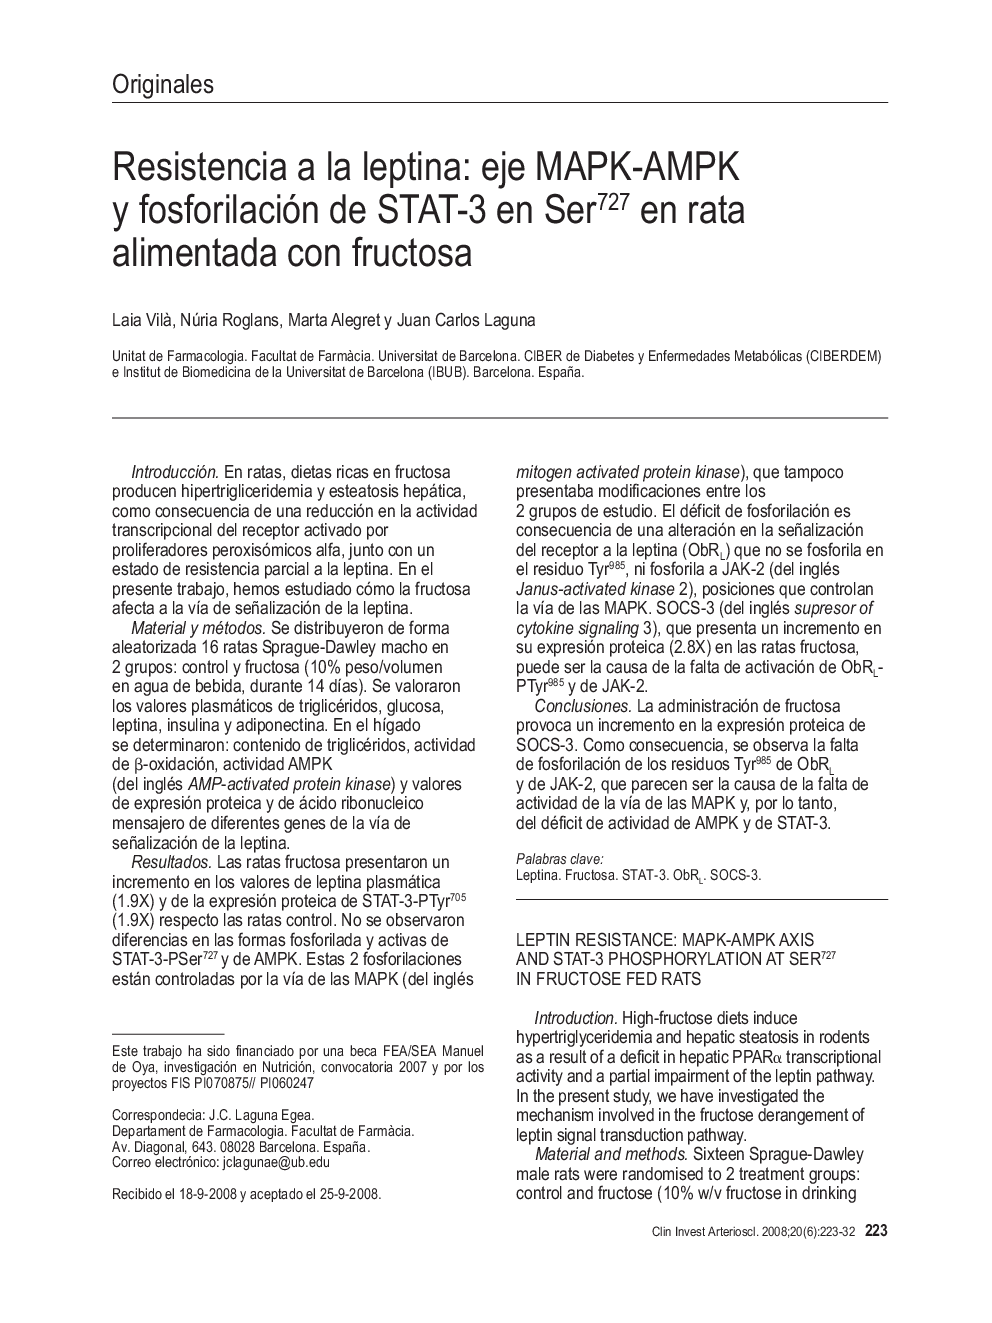 Resistencia a la leptina: eje MAPK-AMPK y fosforilación de STAT-3 en Ser727 en rata alimentada con fructosa *